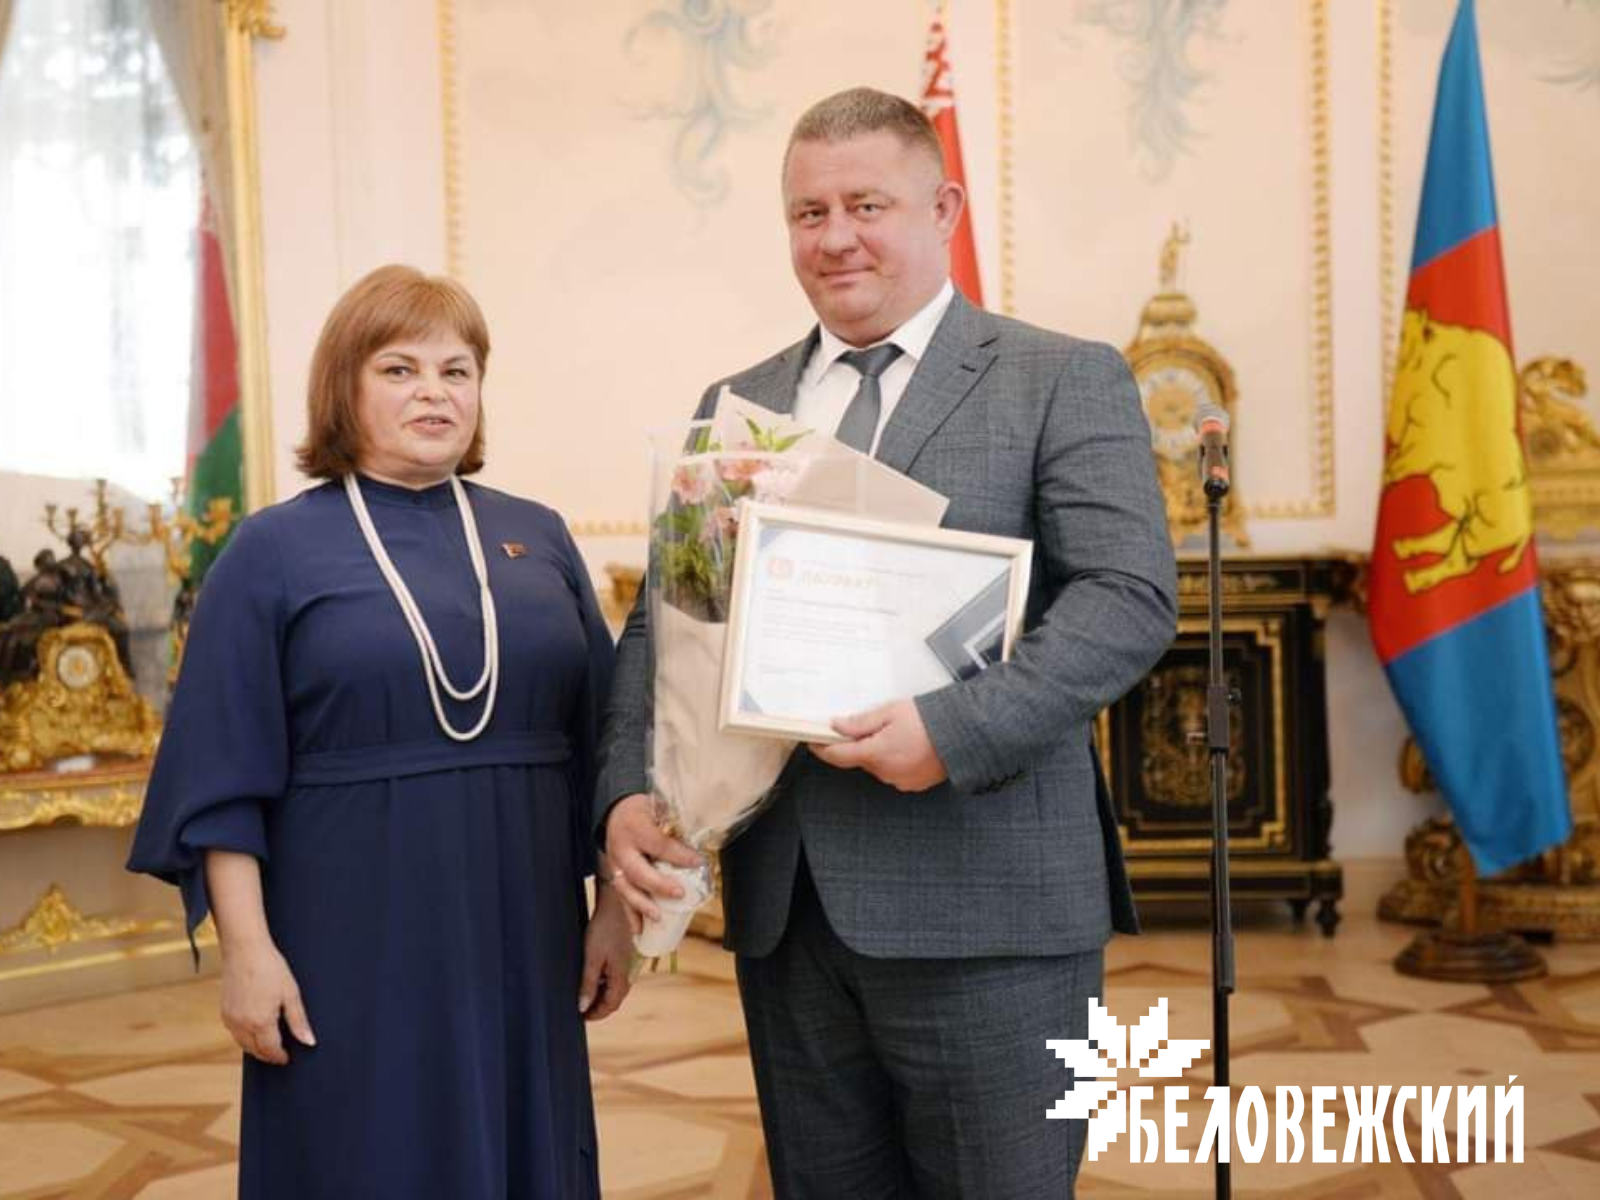 Диплом лучших товаров Республики Беларусь у ОАО «Беловежский»